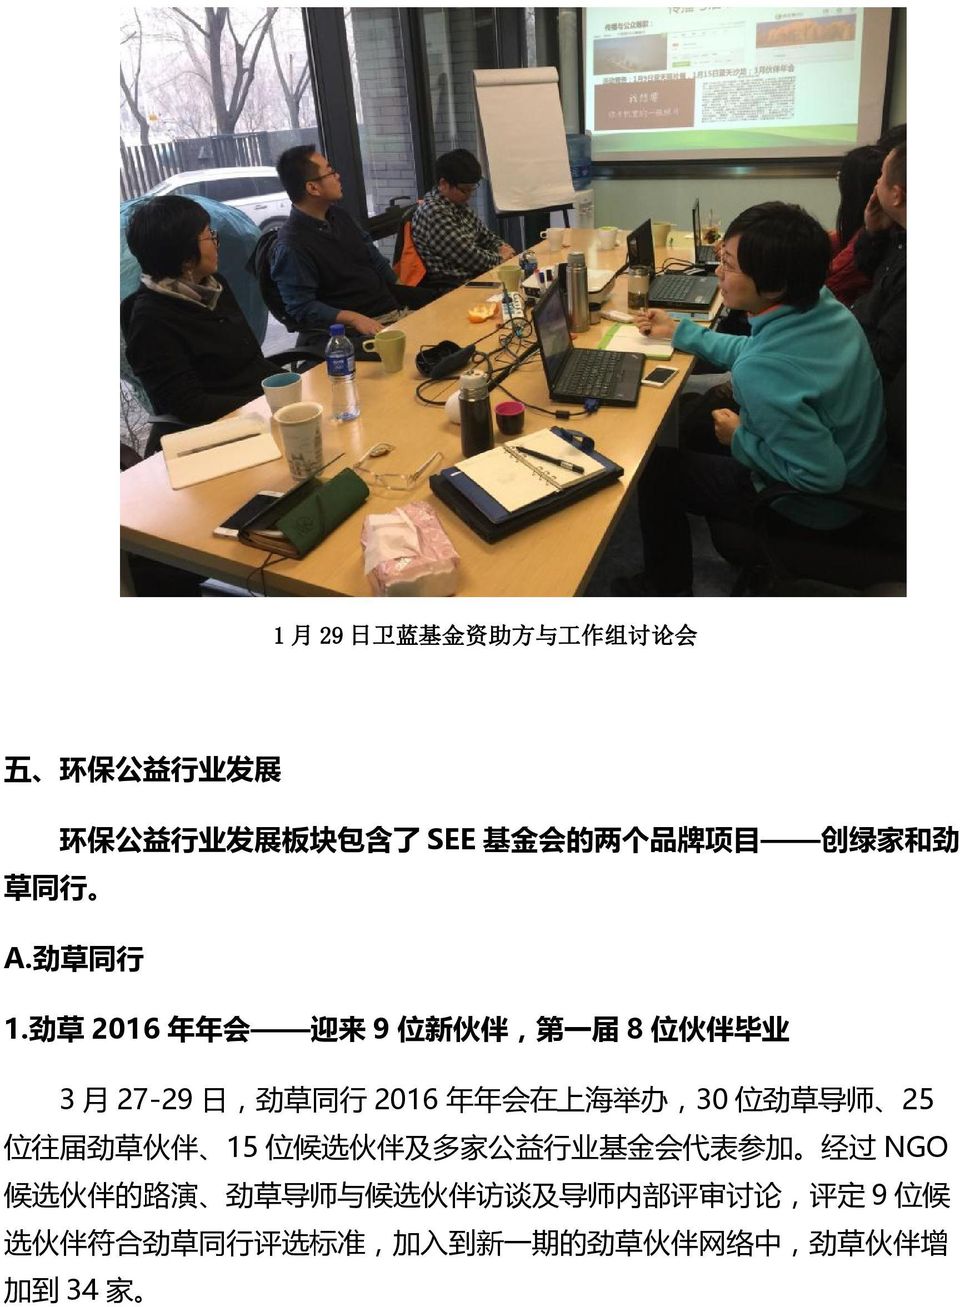 劲 草 2016 年 年 会 迎 来 9 位 新 伙 伴, 第 一 届 8 位 伙 伴 毕 业 3 月 27-29 日, 劲 草 同 行 2016 年 年 会 在 上 海 举 办,30 位 劲 草 导 师 25 位 往